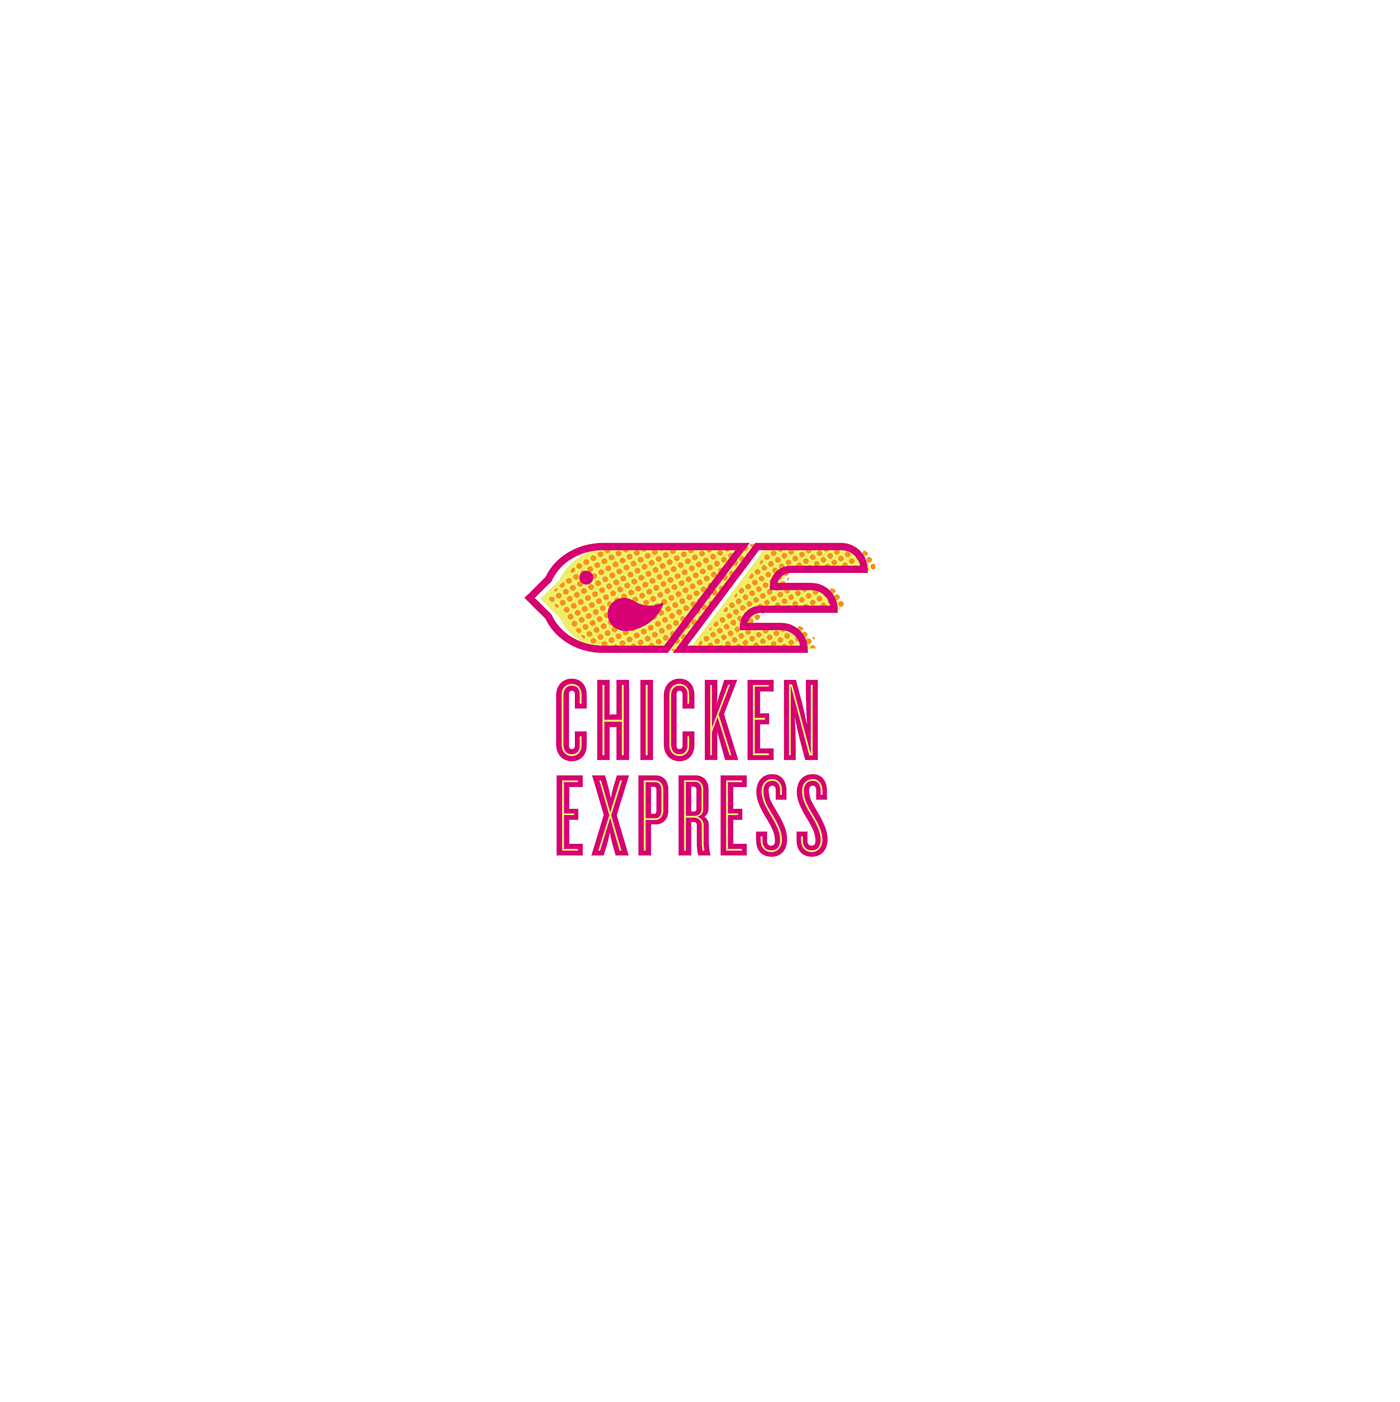 Chicken Express Logo - Chicken Express Identity on Behance